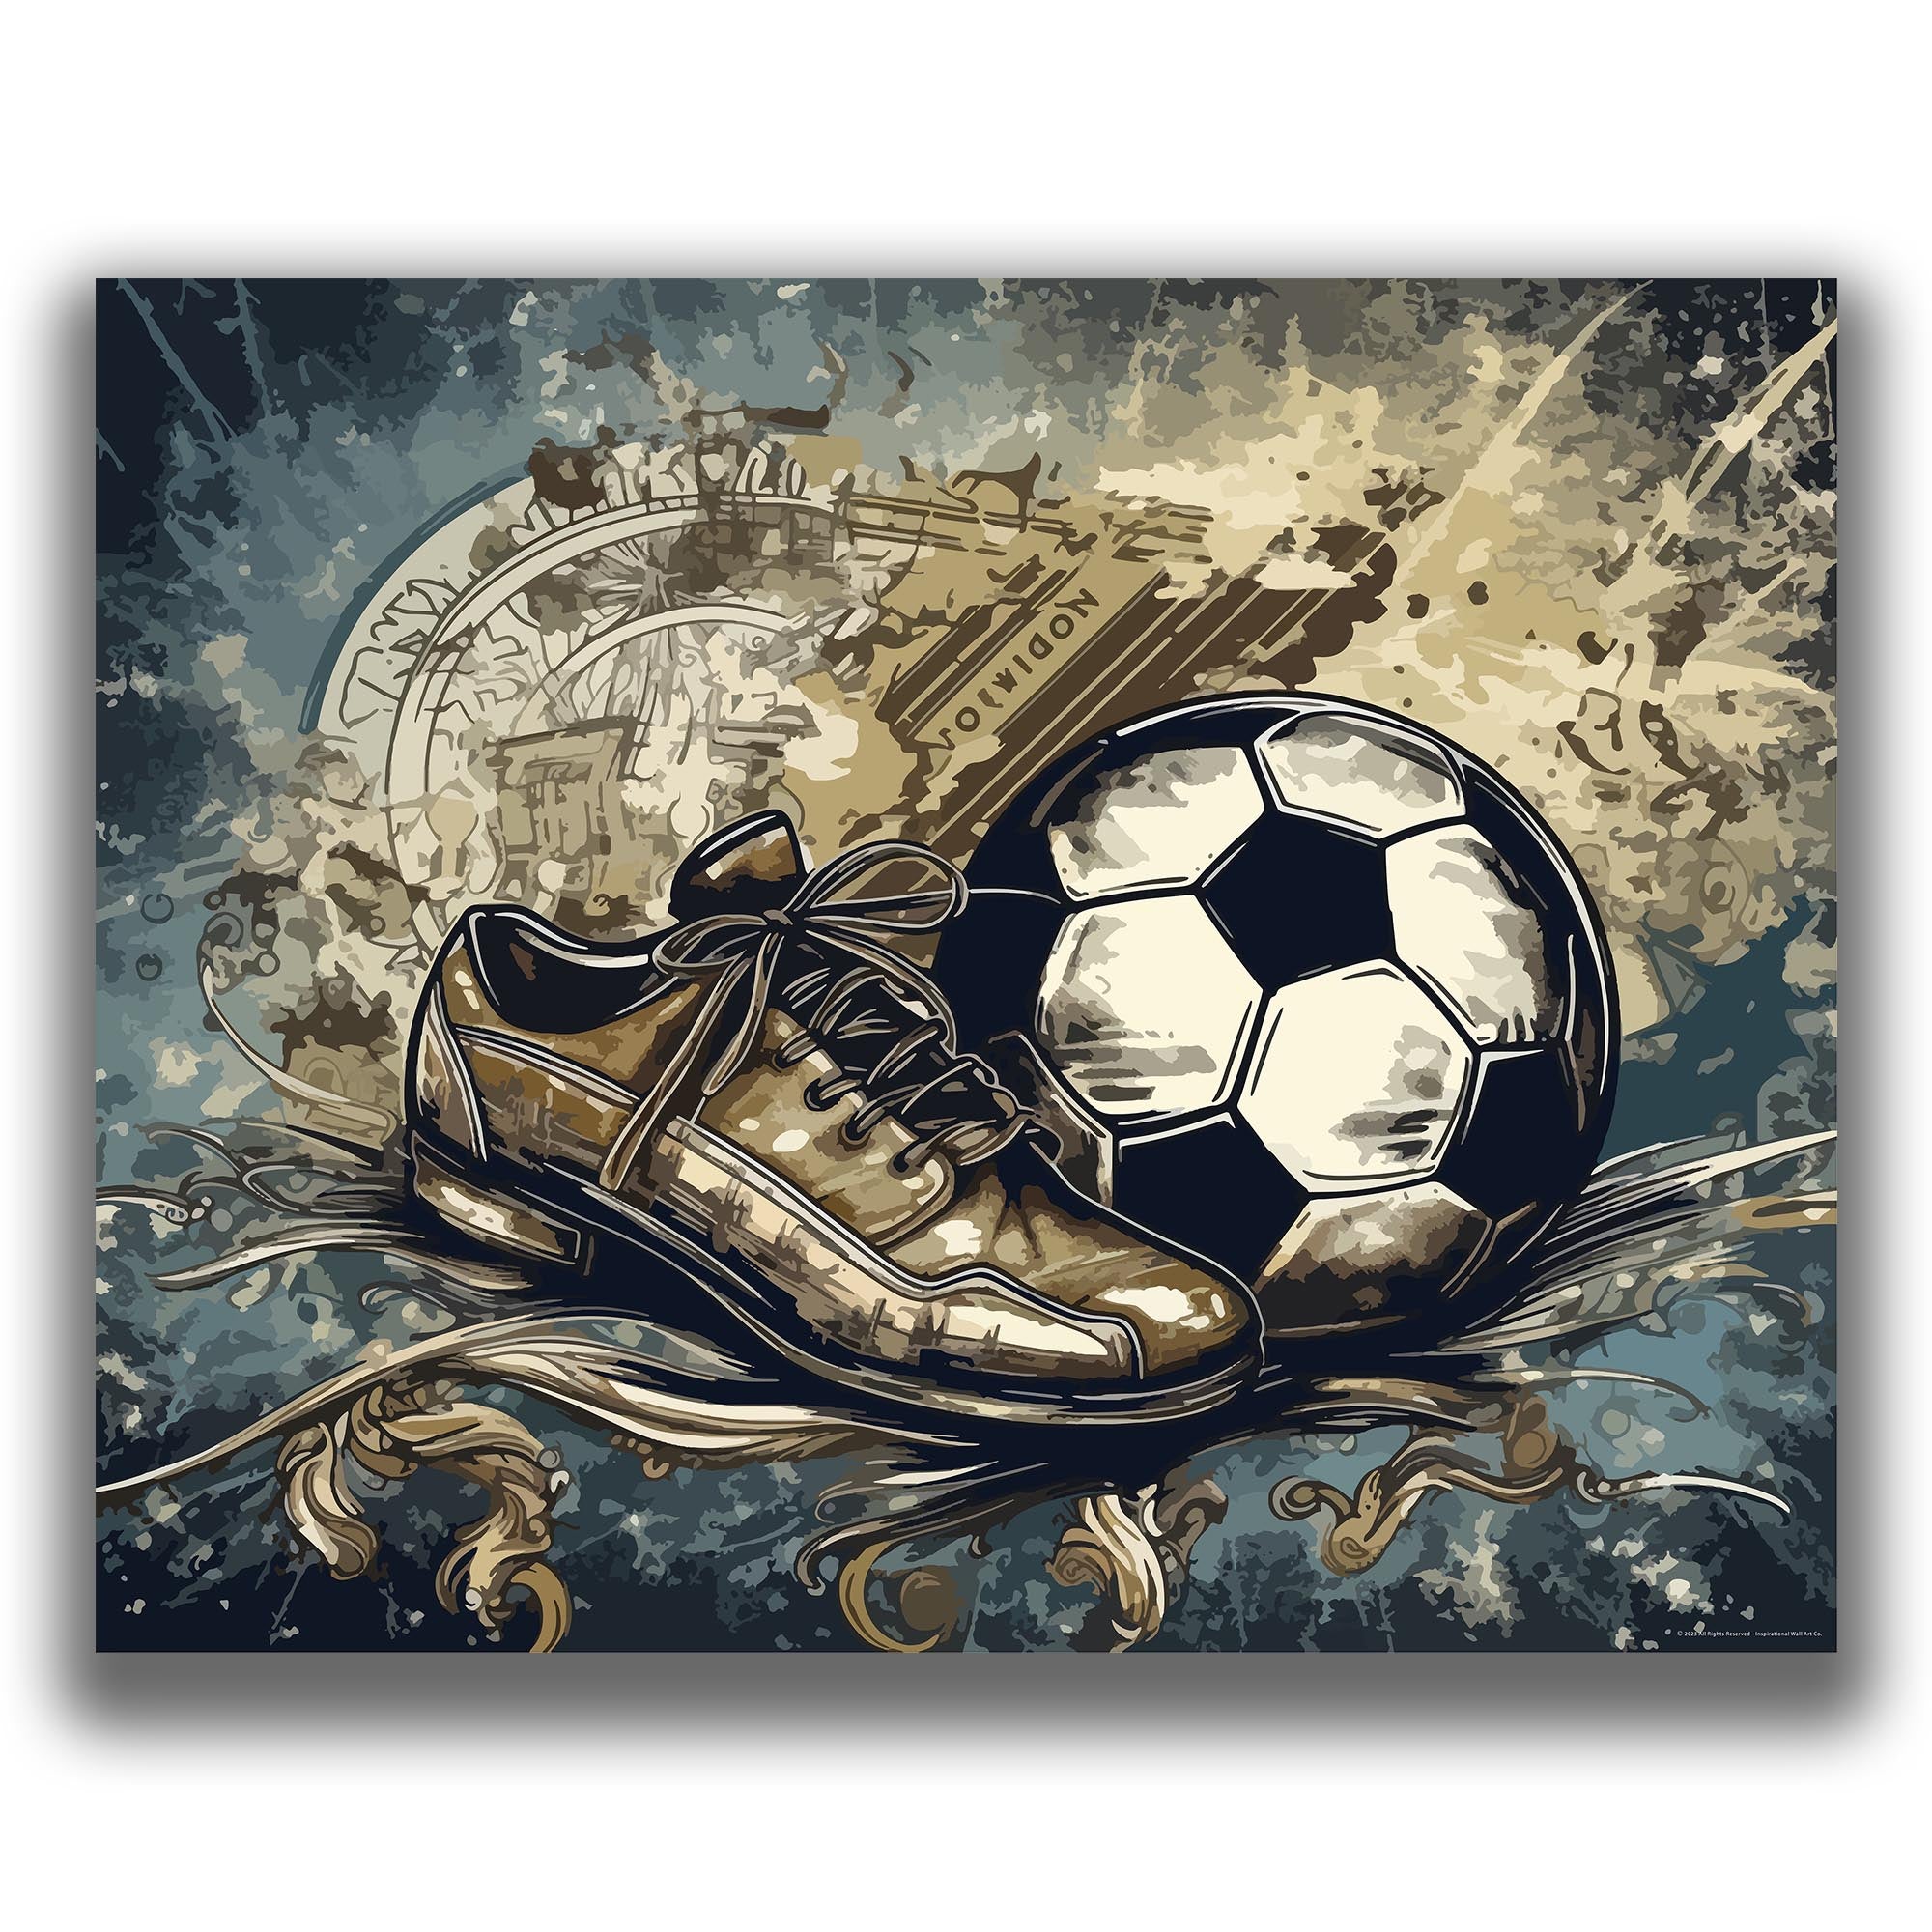 Score - Soccer Poster